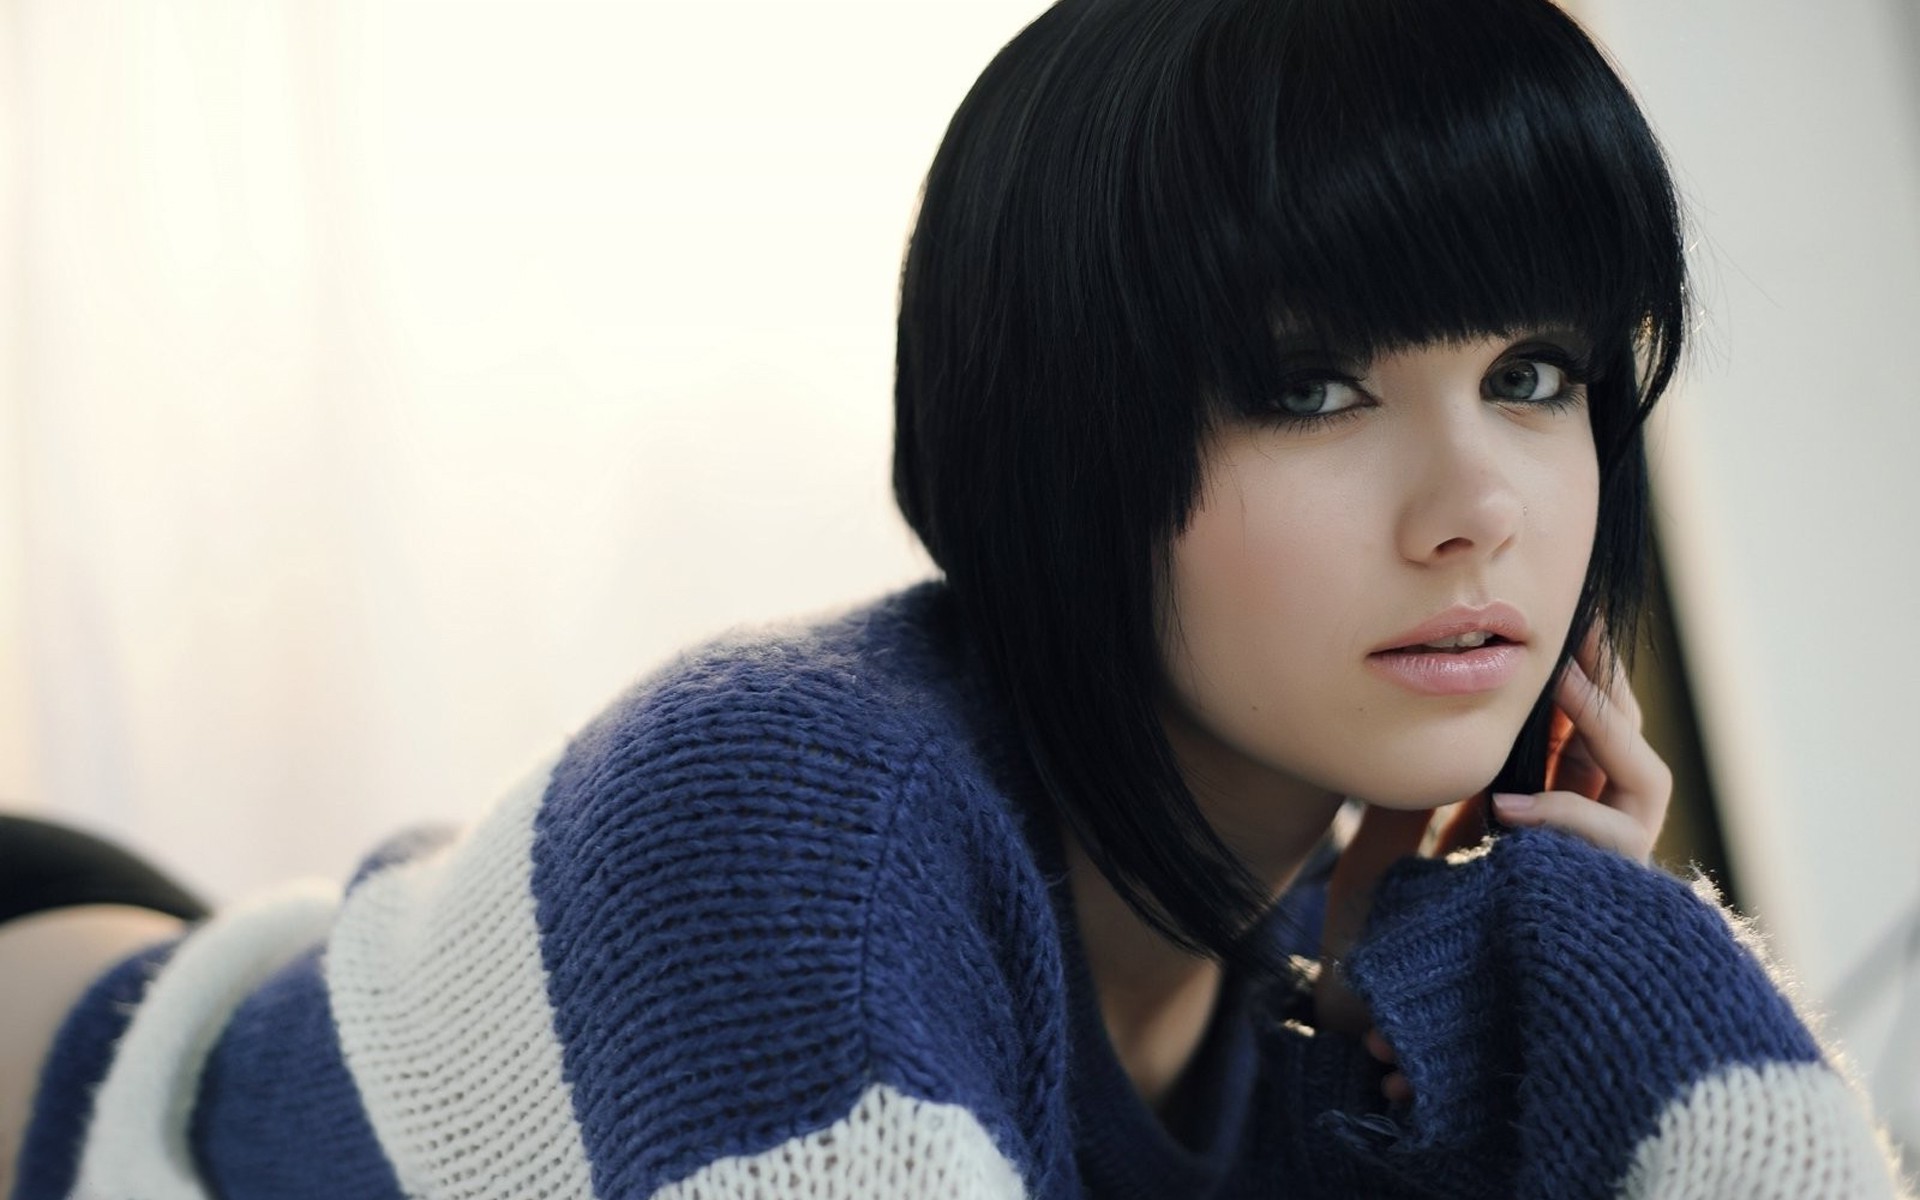 Black Hair Blue Eyes Sweater Melissa Clarke Model Women Wallpapers Hd Desktop And Mobile